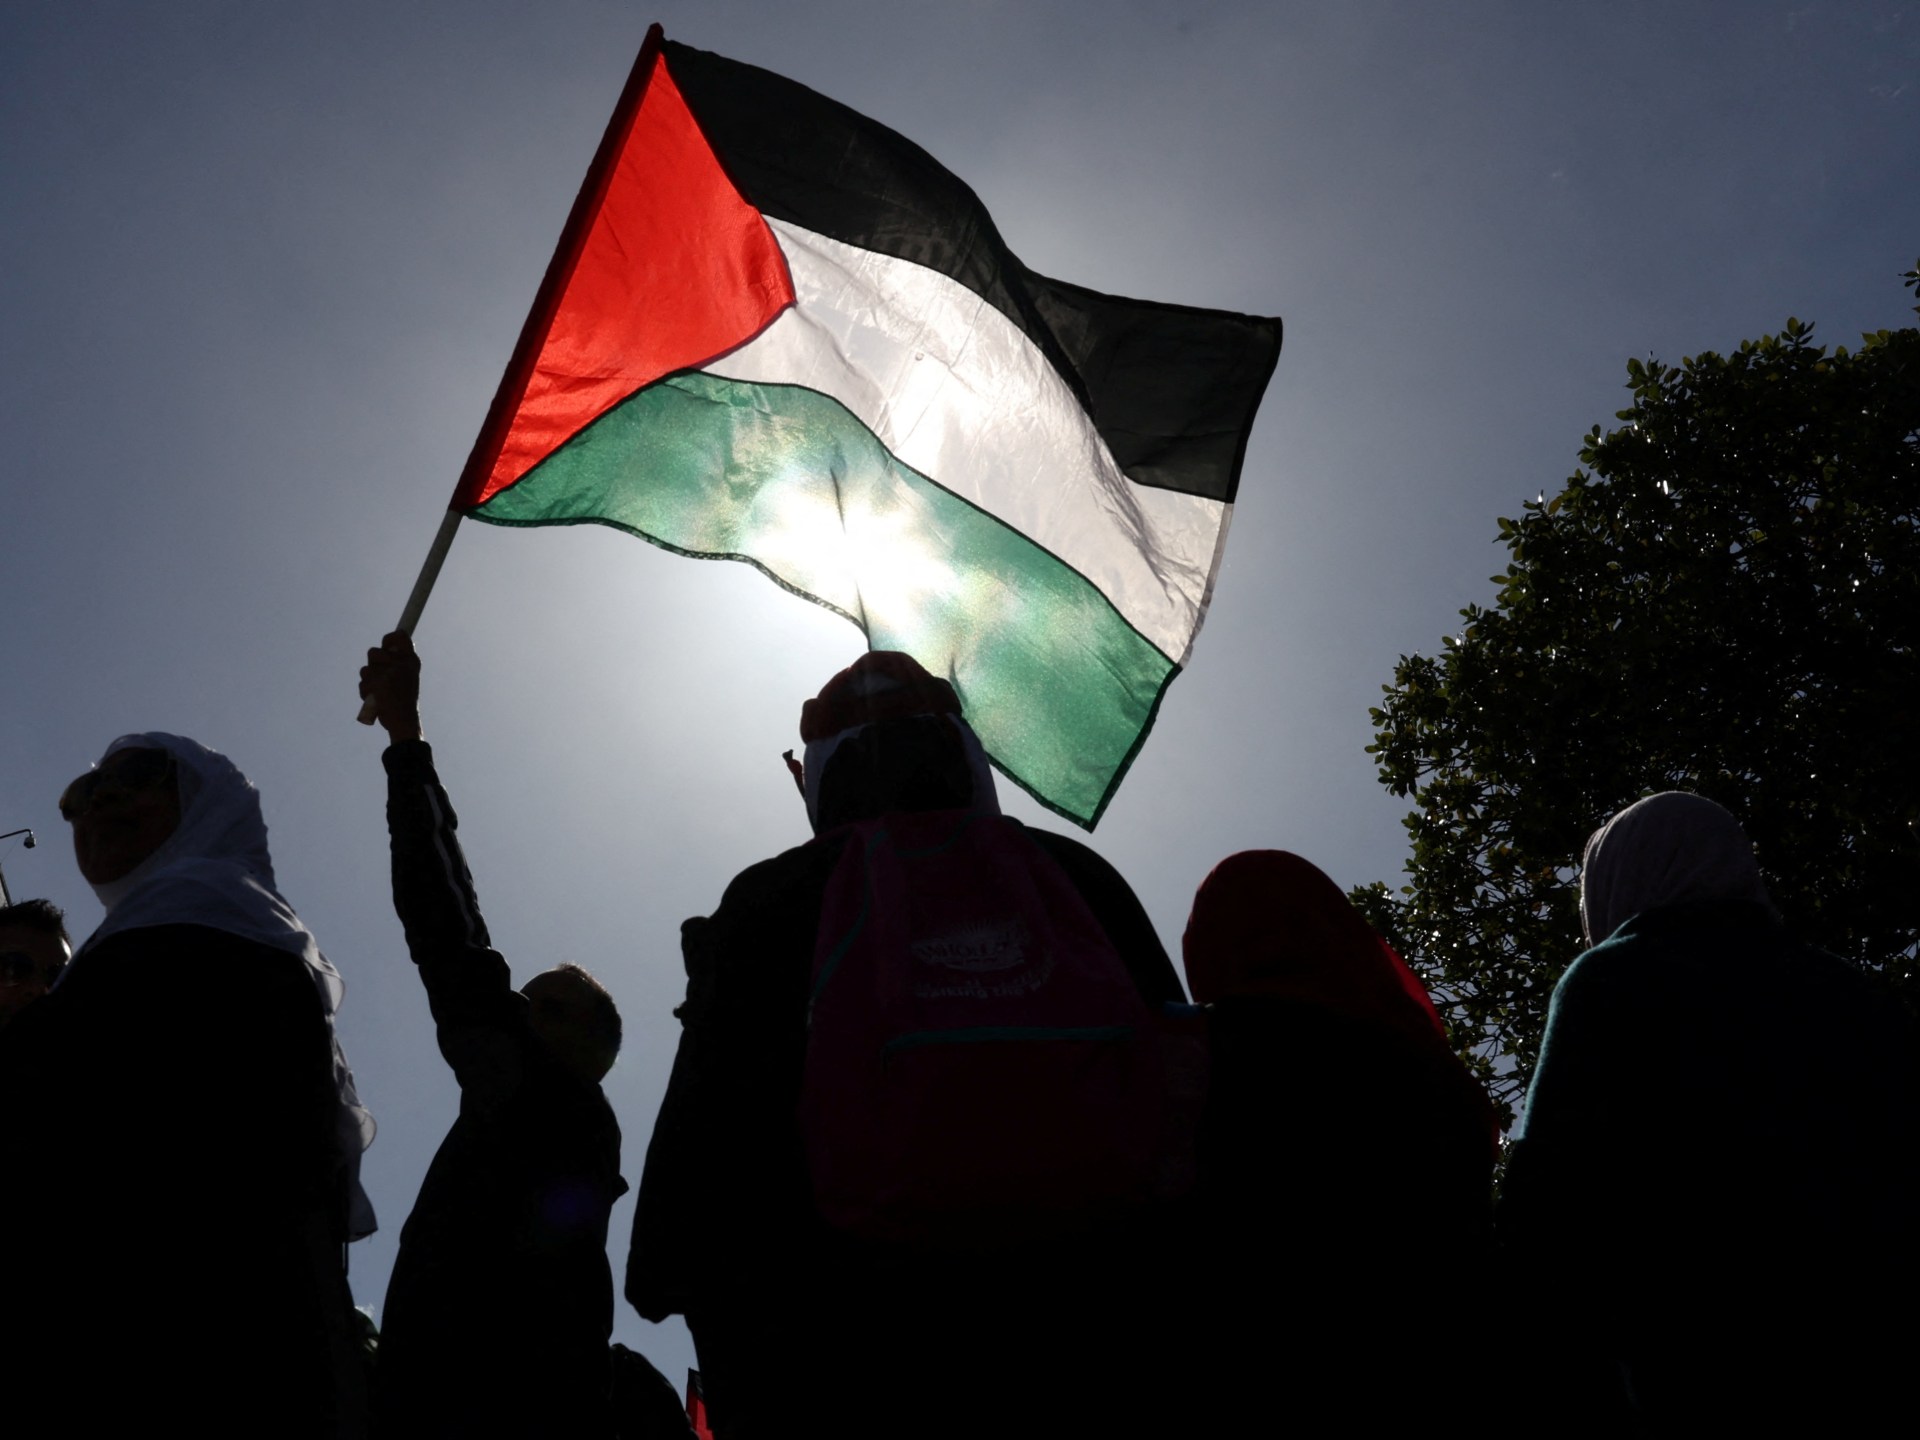 Percaya atau tidak, keadilan akan menang di Palestina |  Konflik Israel-Palestina